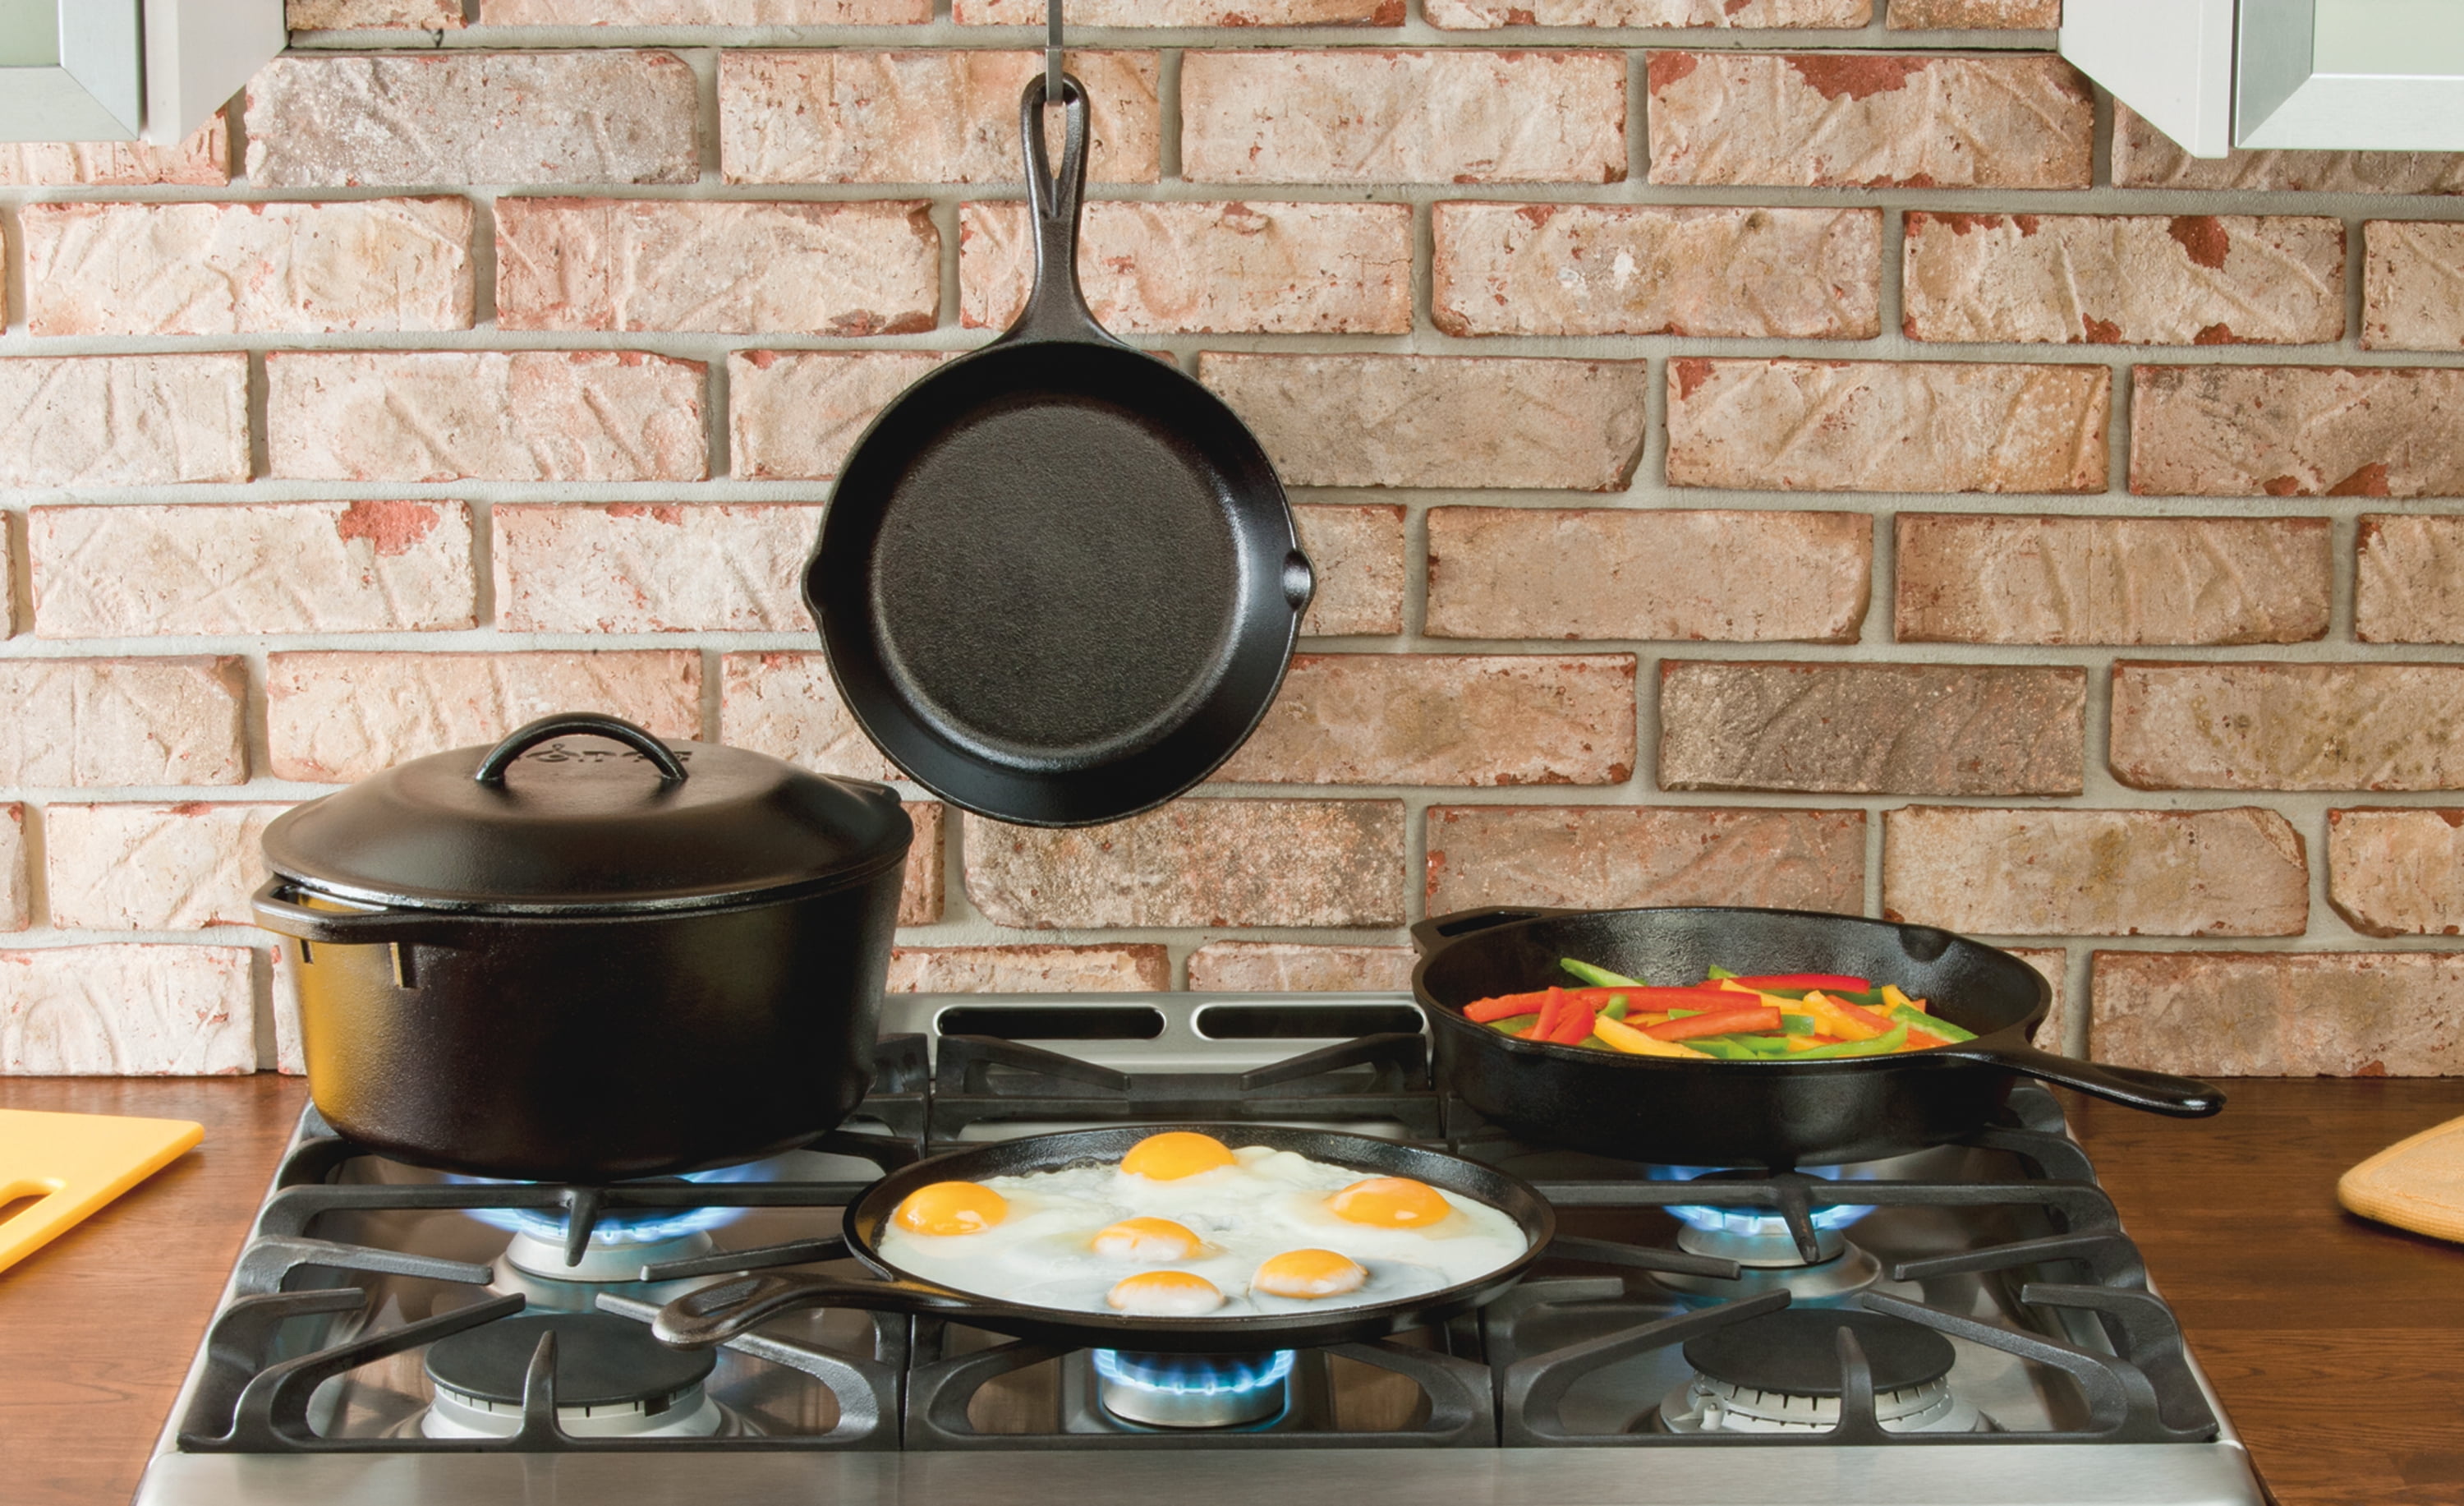  Lodge L5P3 Cast Iron Cookware Mini Muffin/Cornbread Pan,  Pre-Seasoned,Black,7.62 x 5.25 x 1.5. : Home & Kitchen